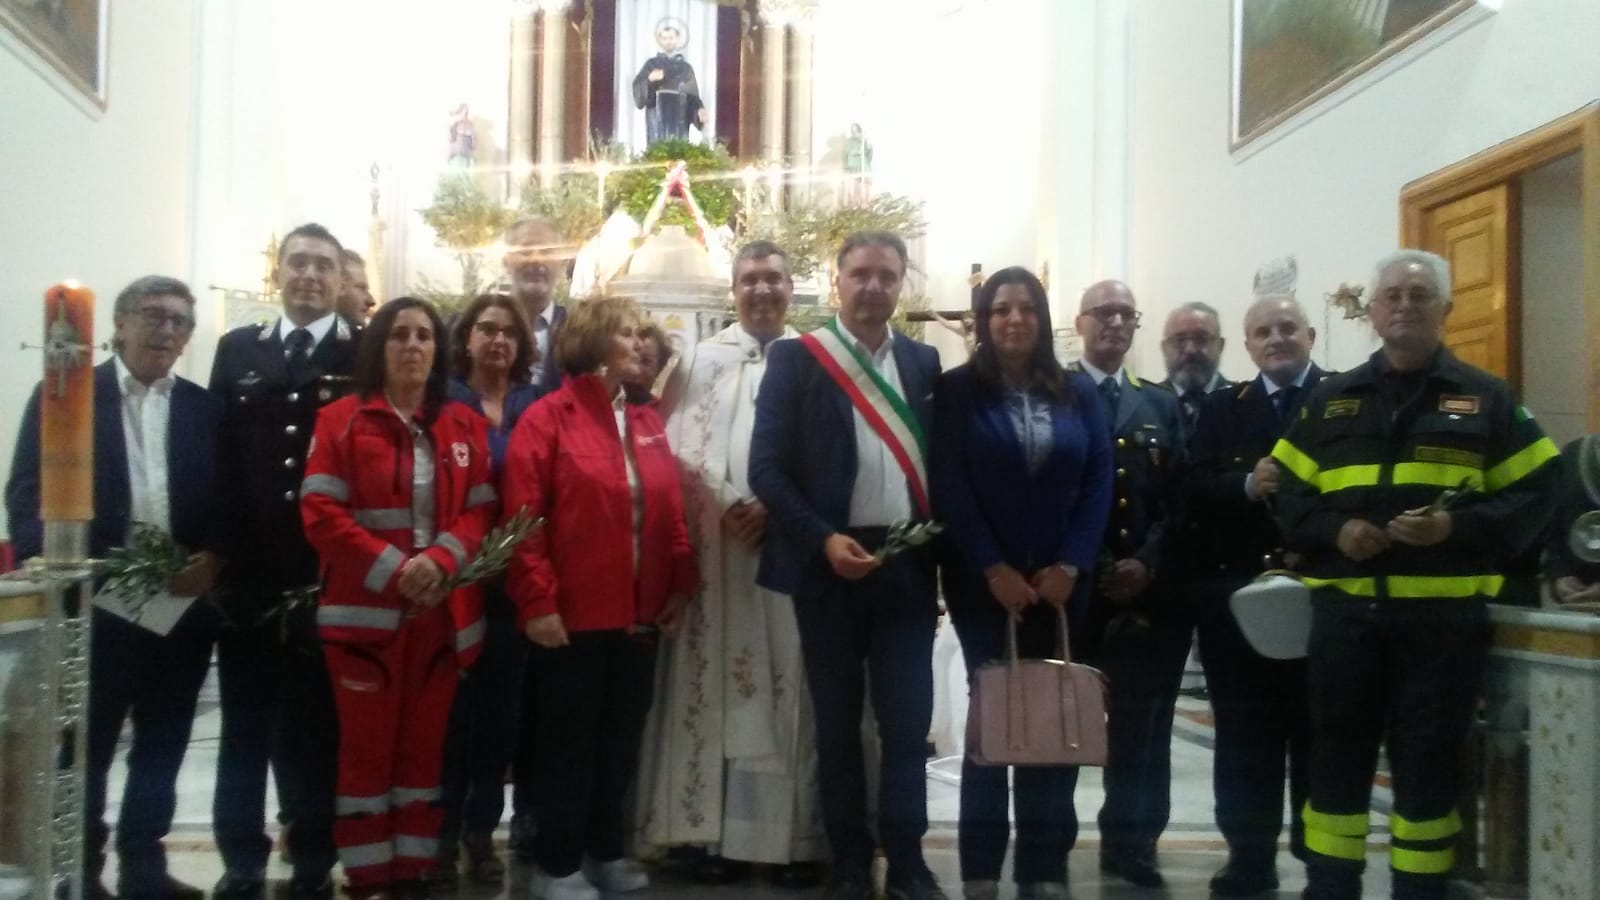 Mussomeli,commemorato il Transito di S. Francesco presenti Autorità civili e militari.La preghiera del sindaco e l’offerta della corona d’alloro al Santo Patrono d’Italia.